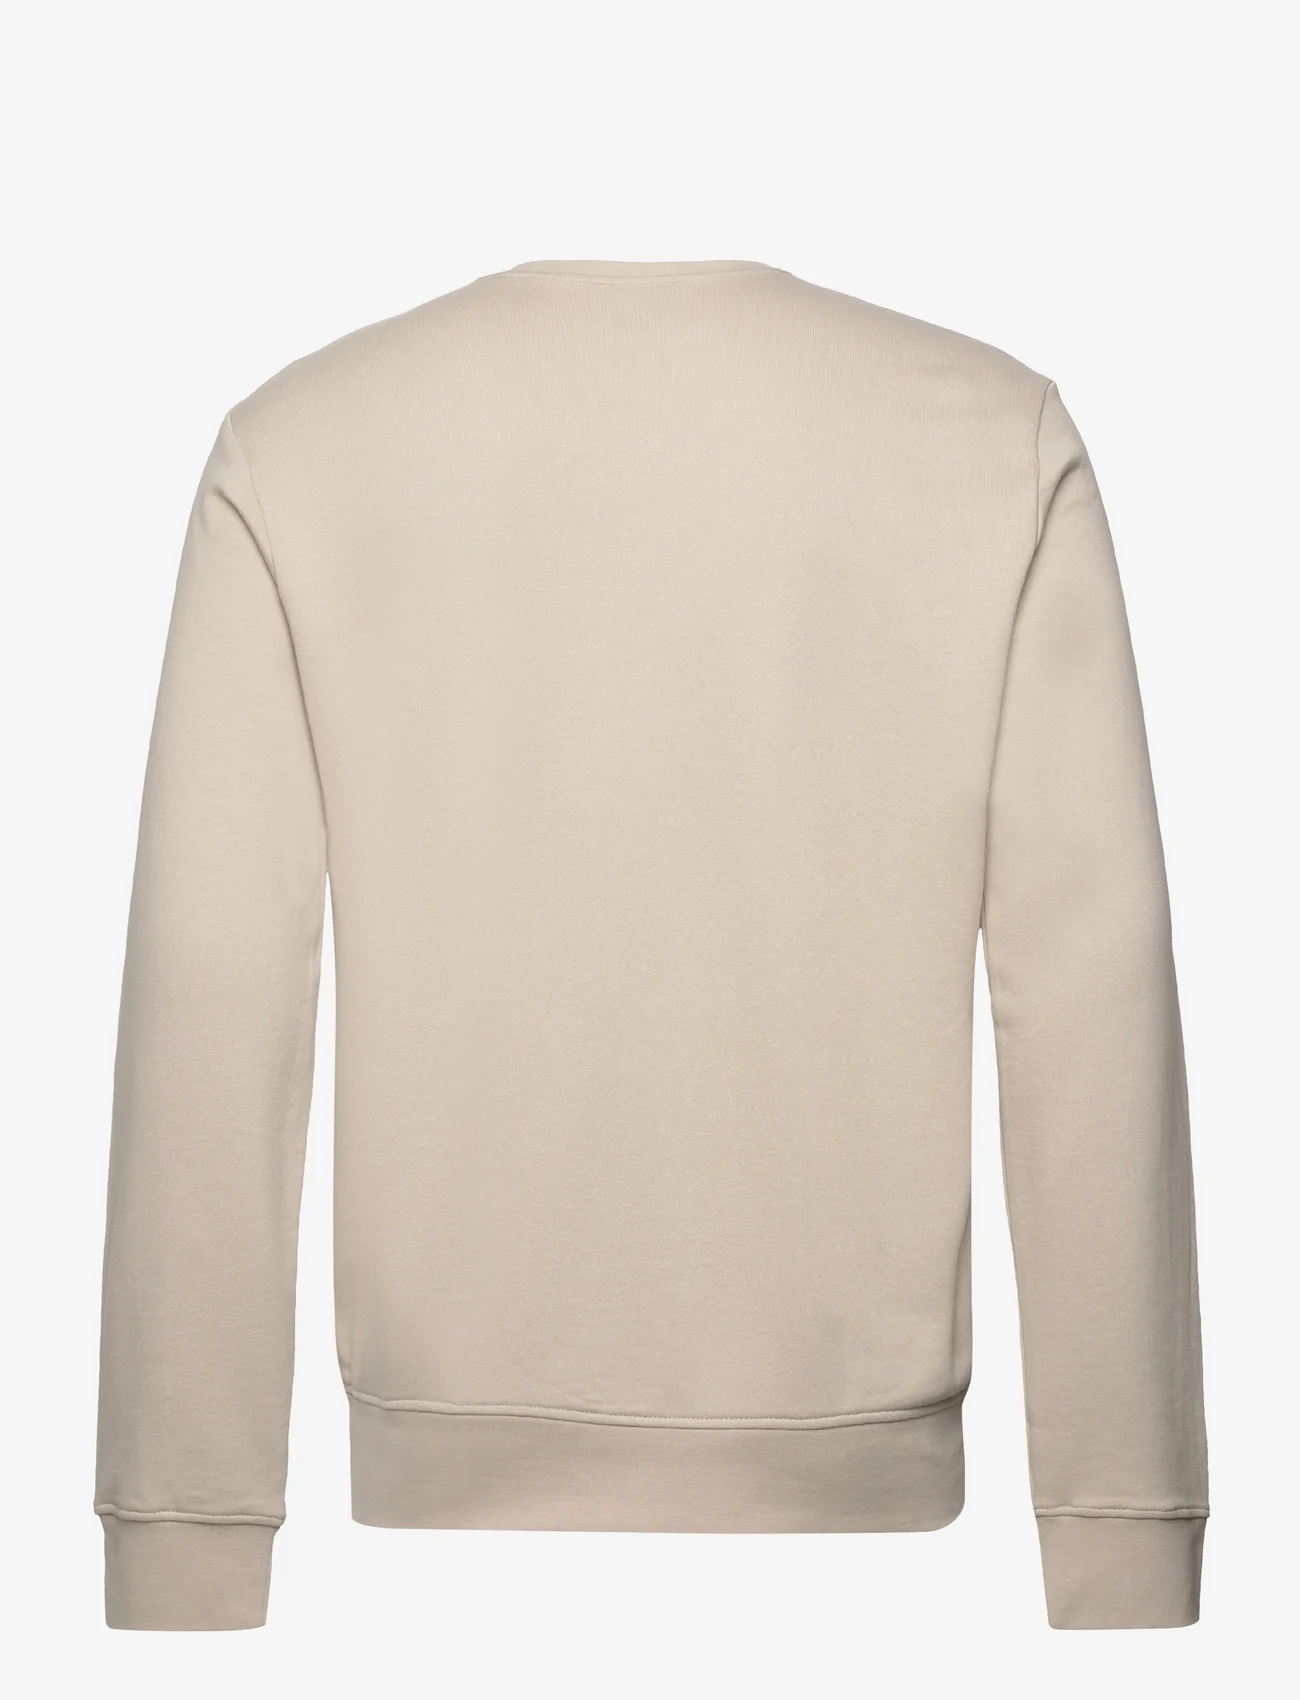 Armani Exchange - SWEATSHIRT - sweatshirts - 1934-silver lining - 1